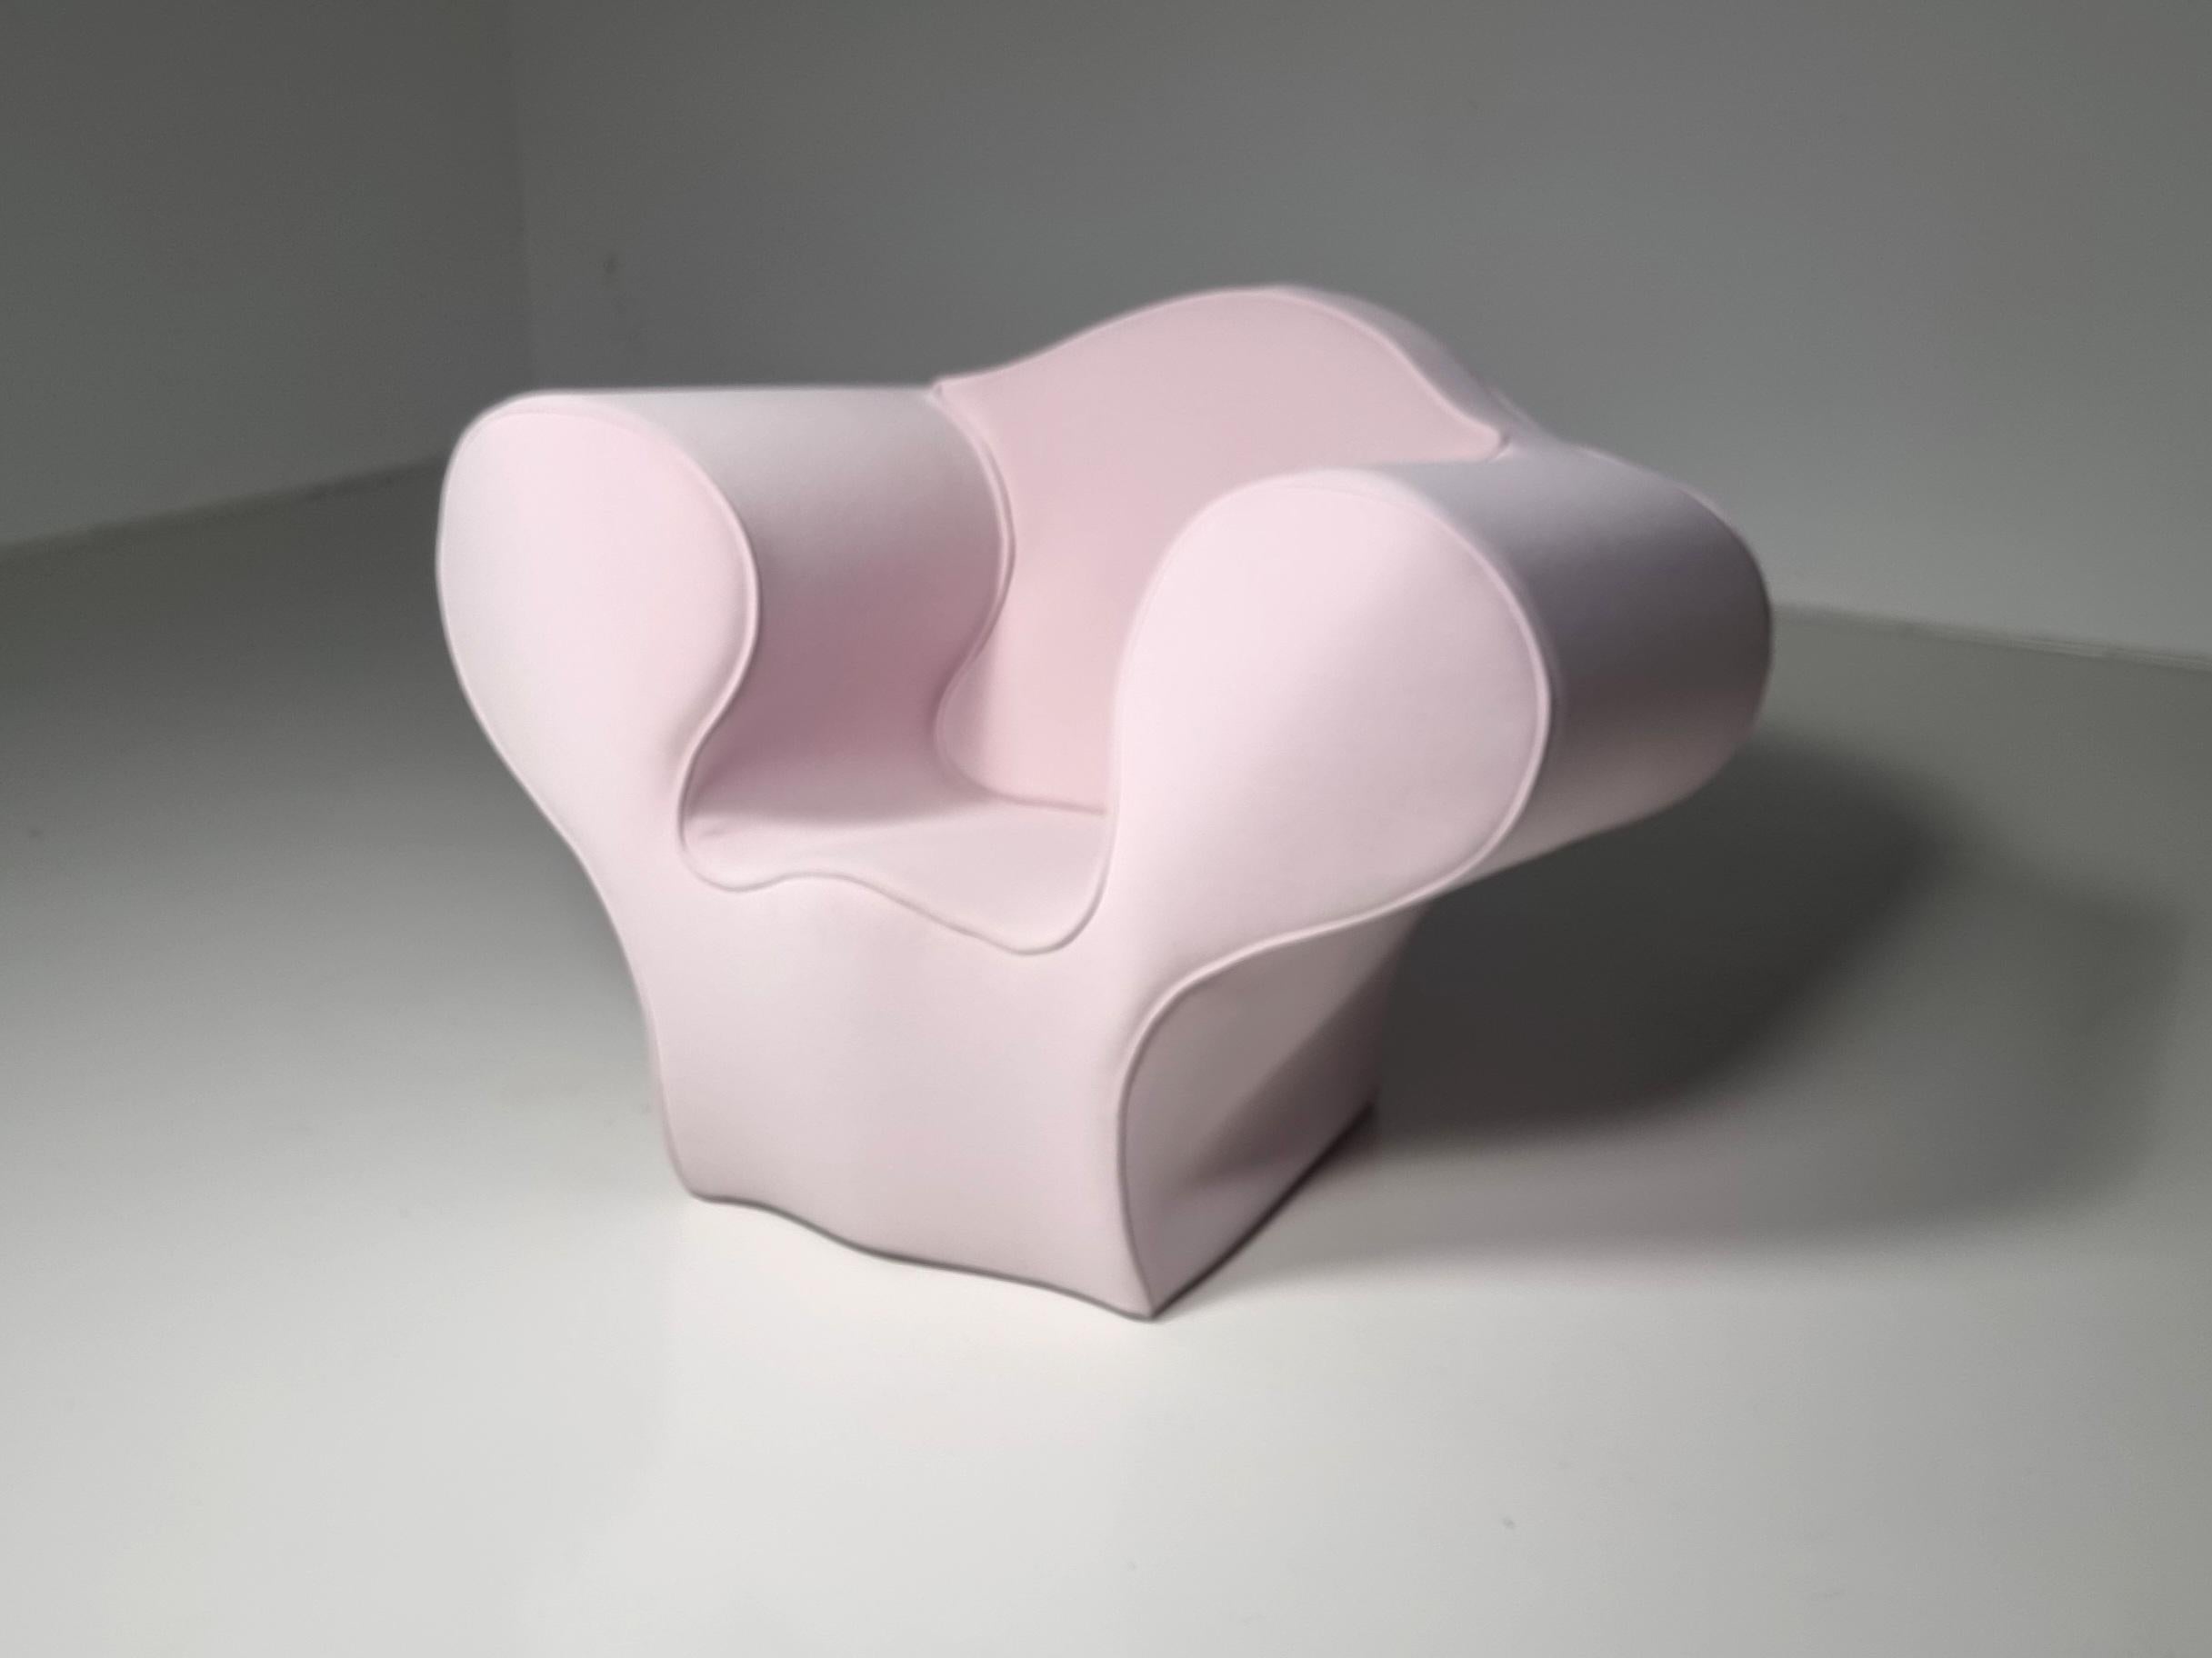 Ron Arads Big Easy-Kollektion begann mit einem 1988 entworfenen Stahlstuhl und wurde seitdem durch Neuinterpretation der Materialien und Produktionsprozesse in andere Formen übertragen. Dieser fantastische skulpturale Stuhl, ein echter Blickfang,